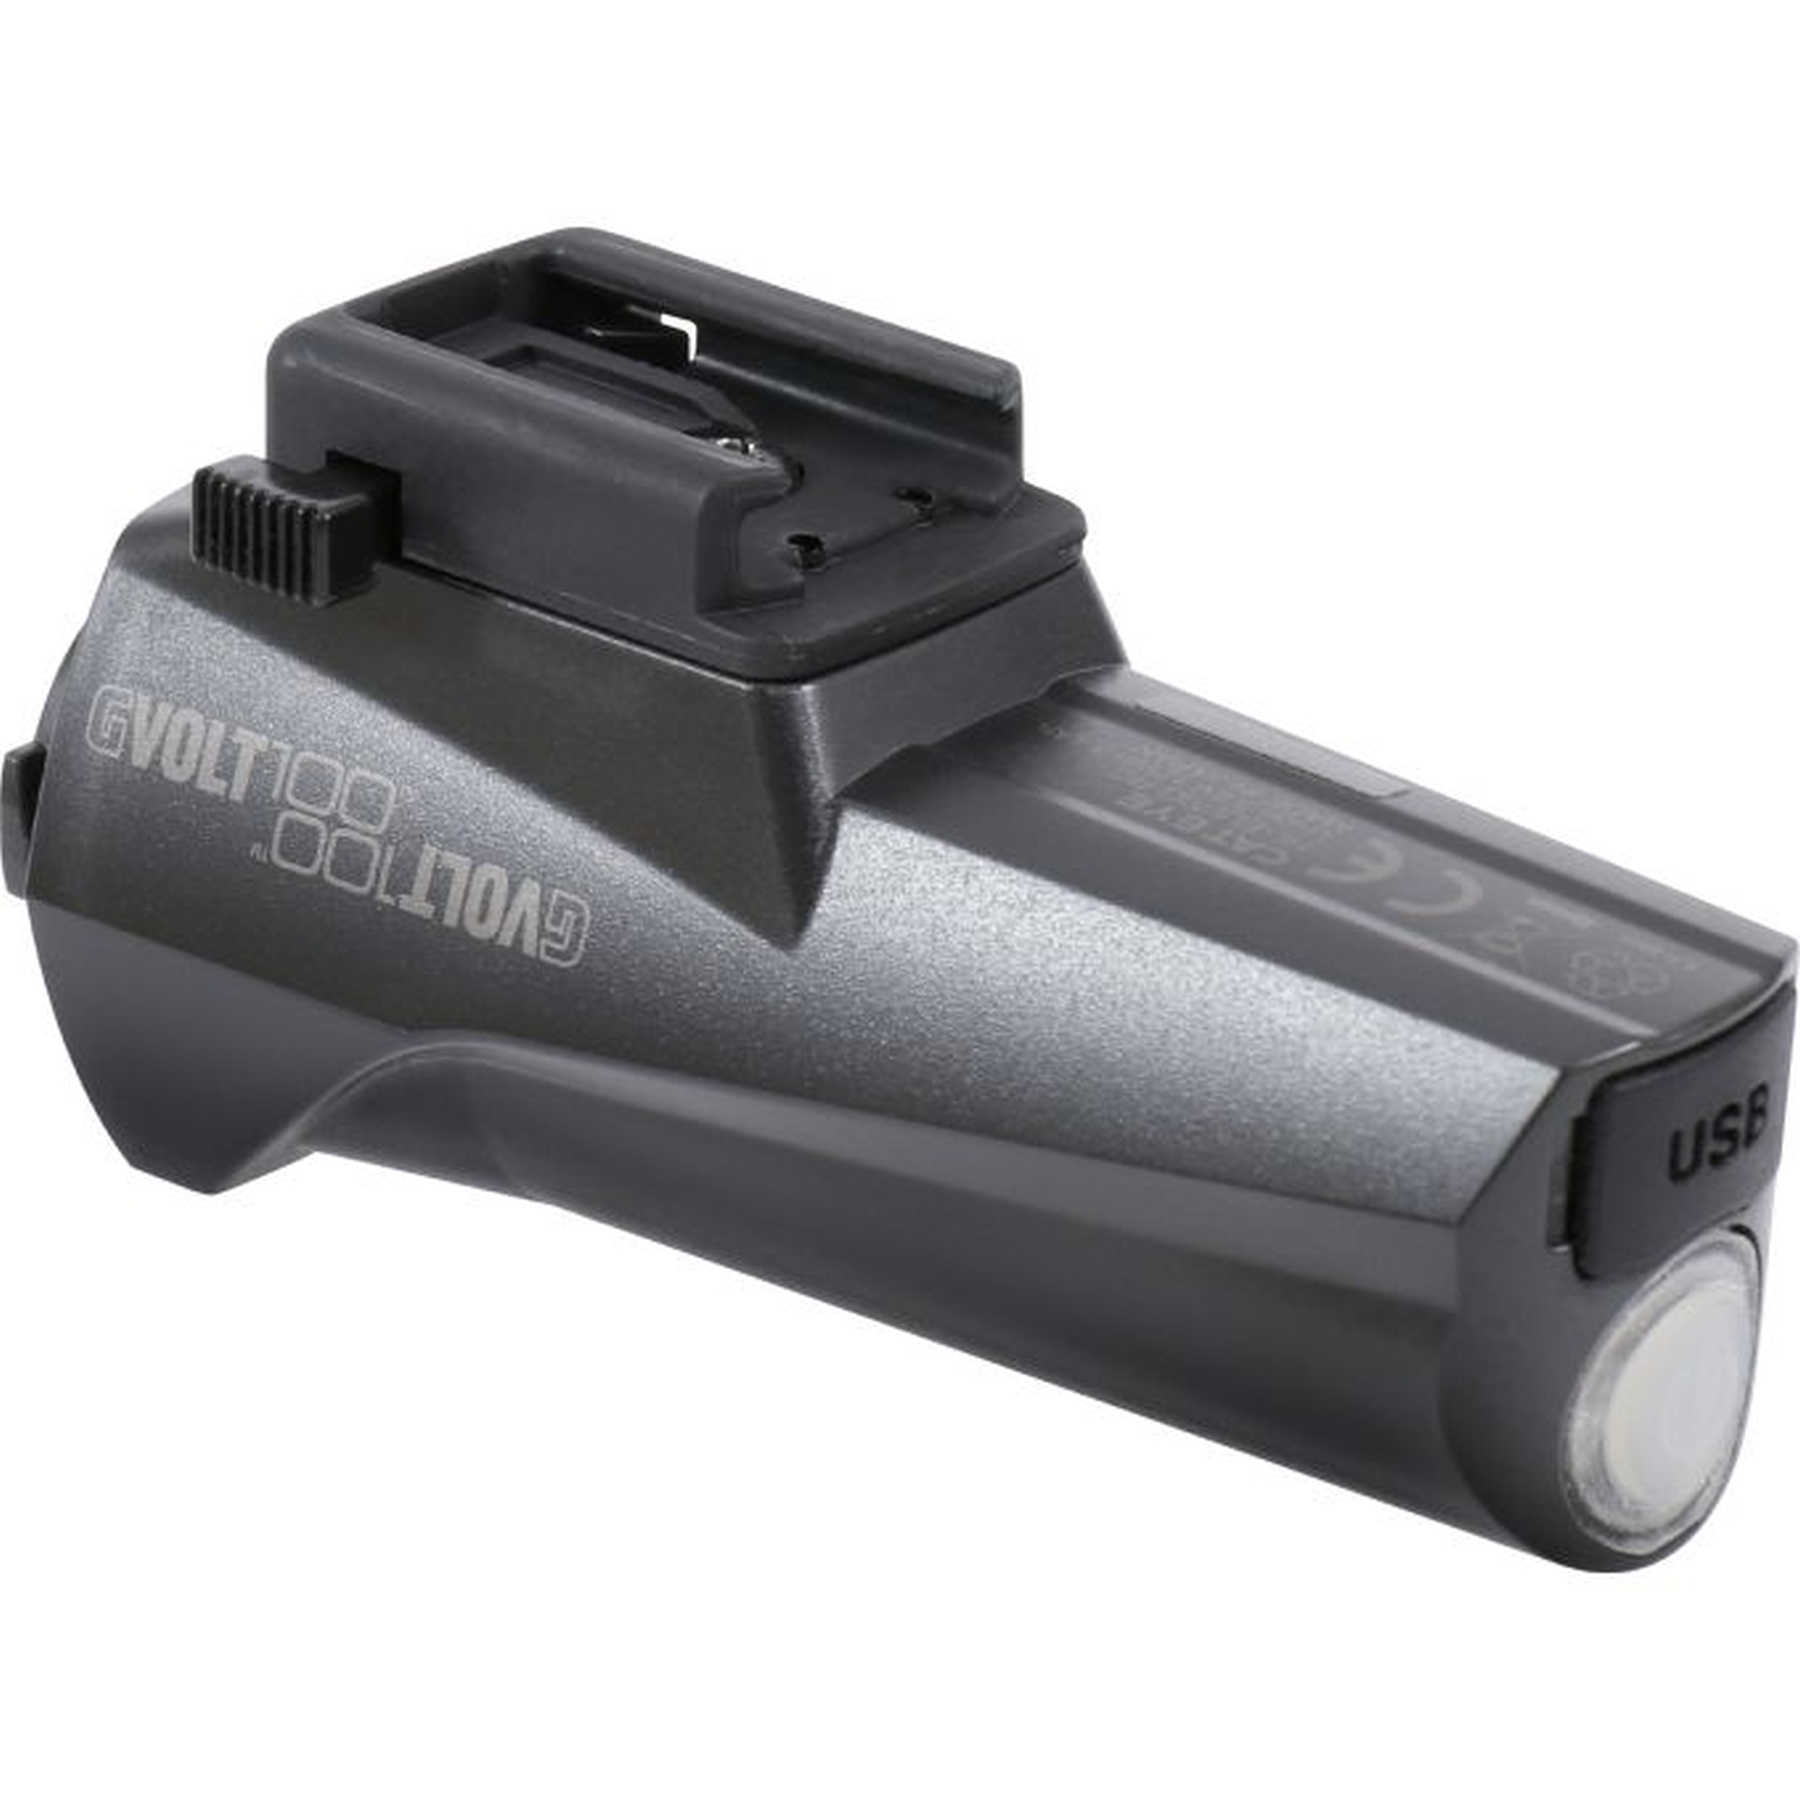 Productfoto van Cat Eye Battery GVolt 100 for E-Bike Light G E100 - black